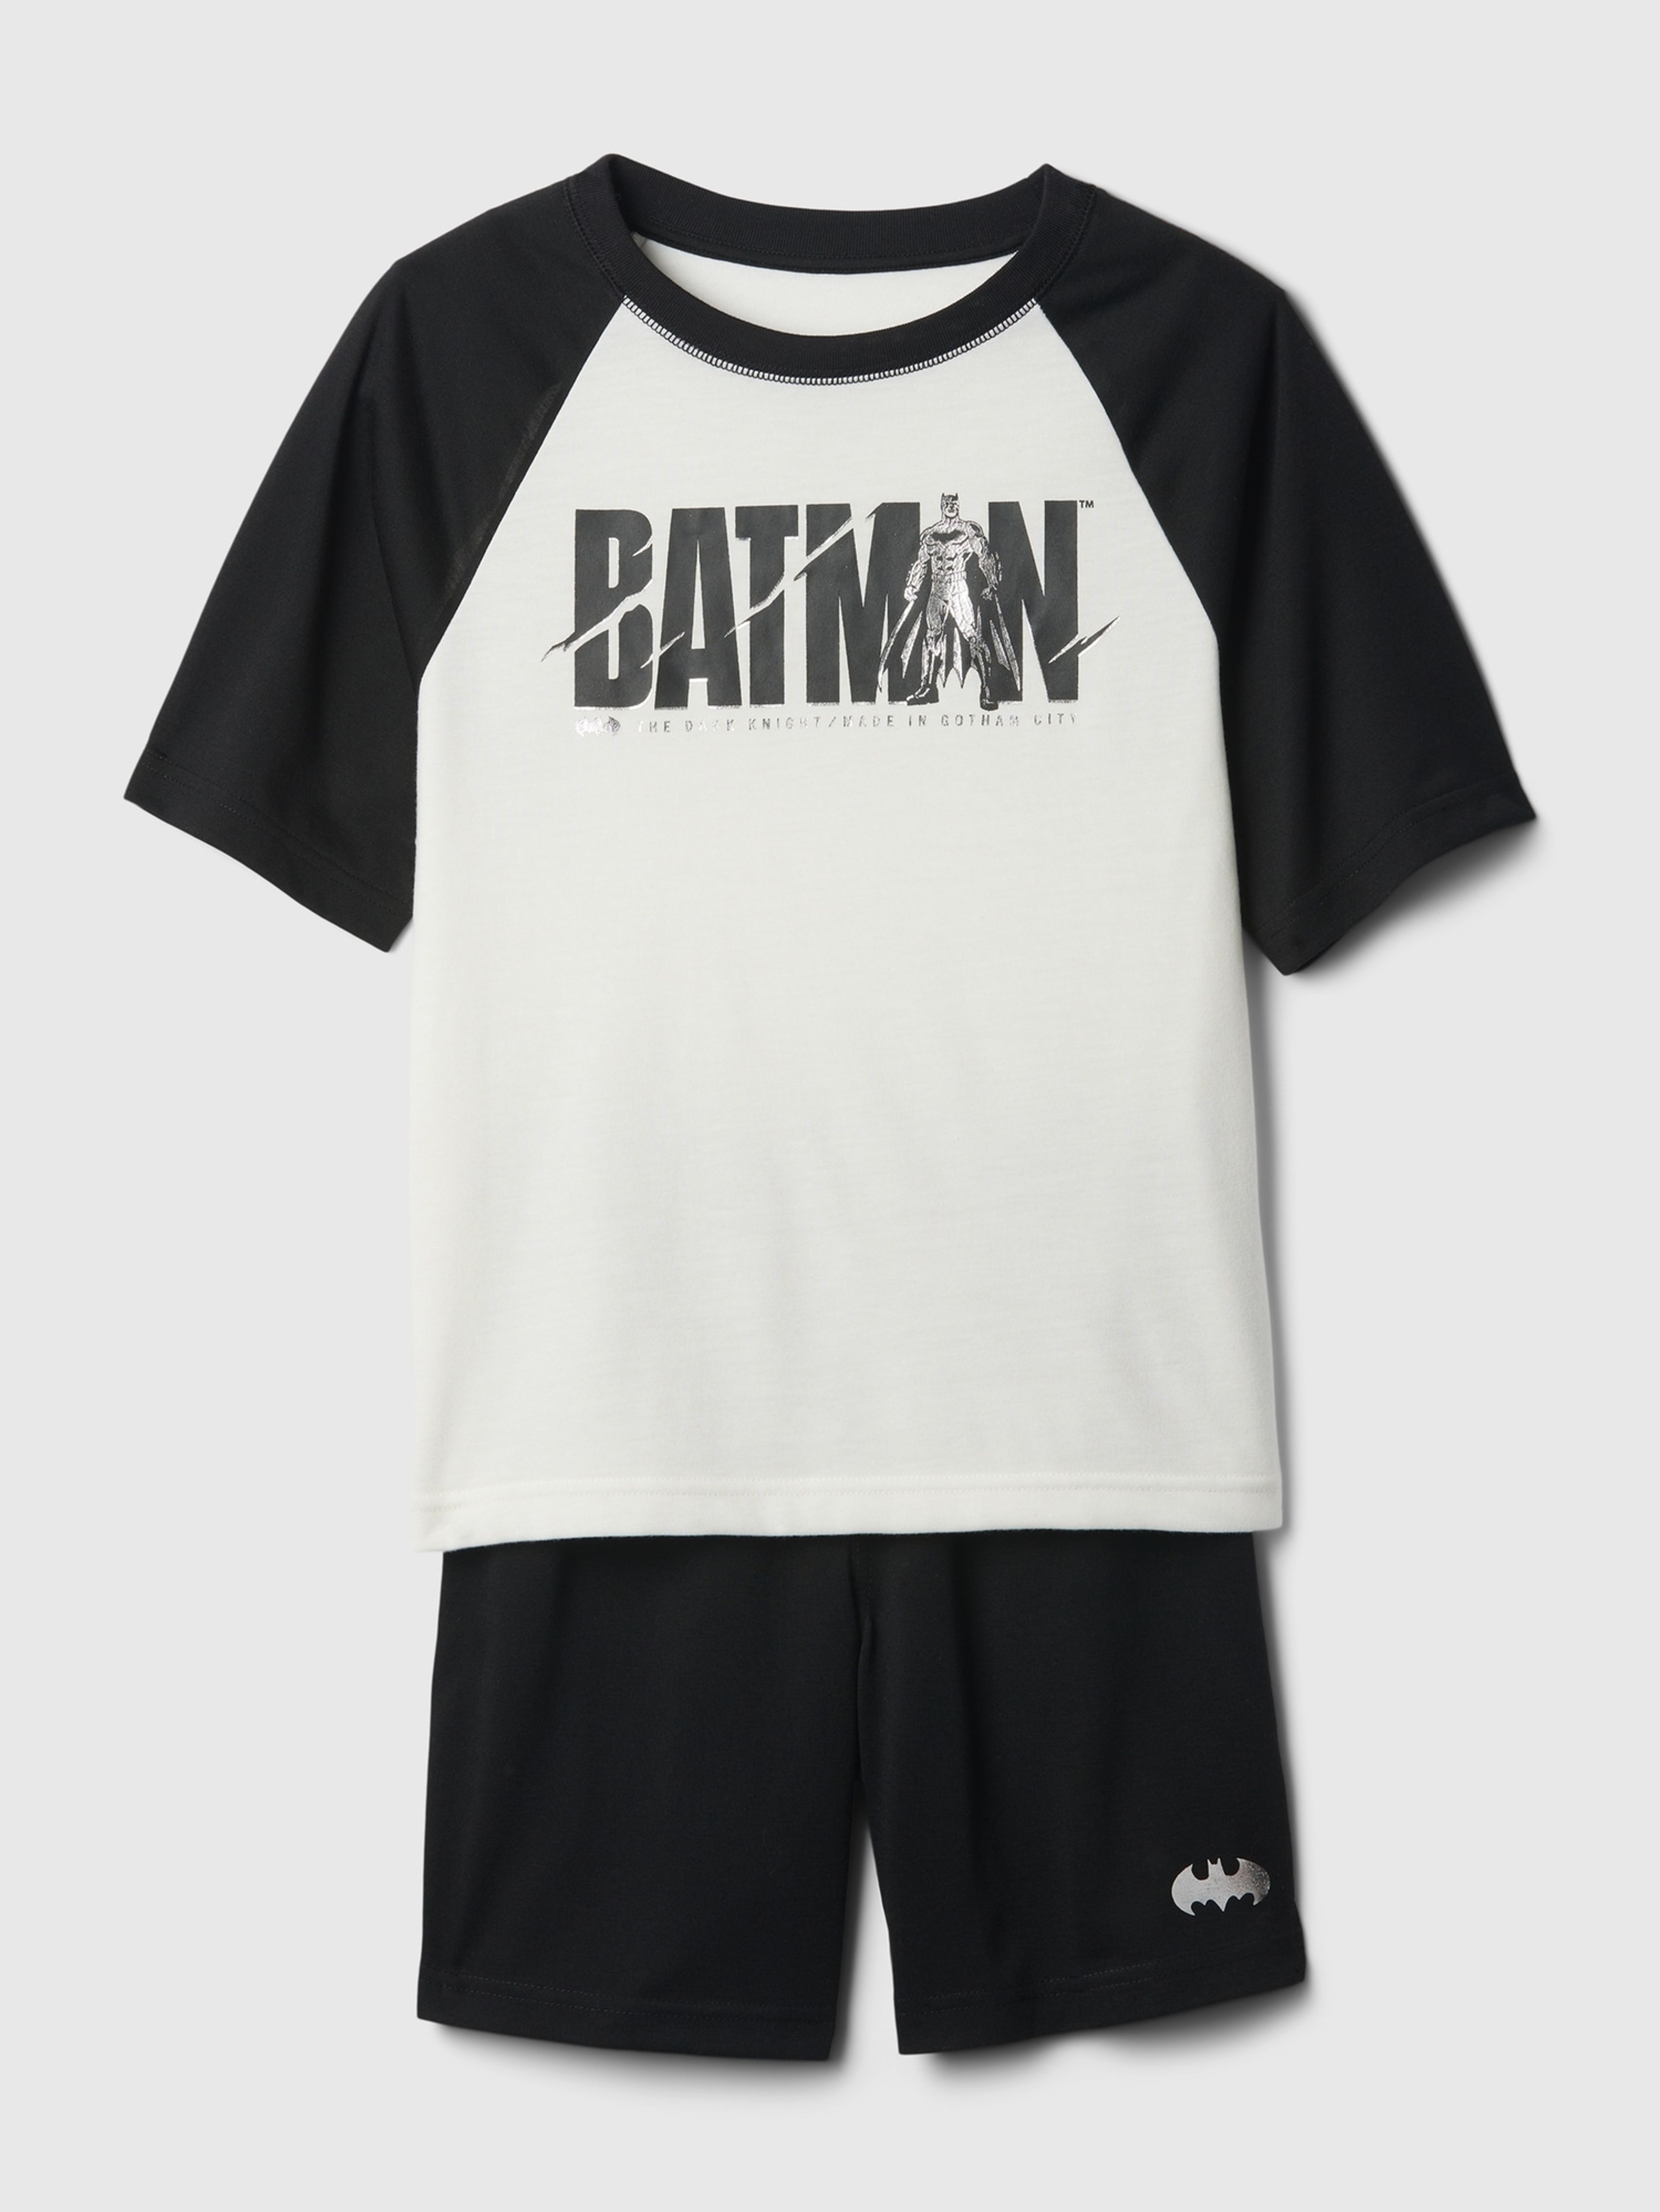 Kinderpyjama GAP & DC Batman